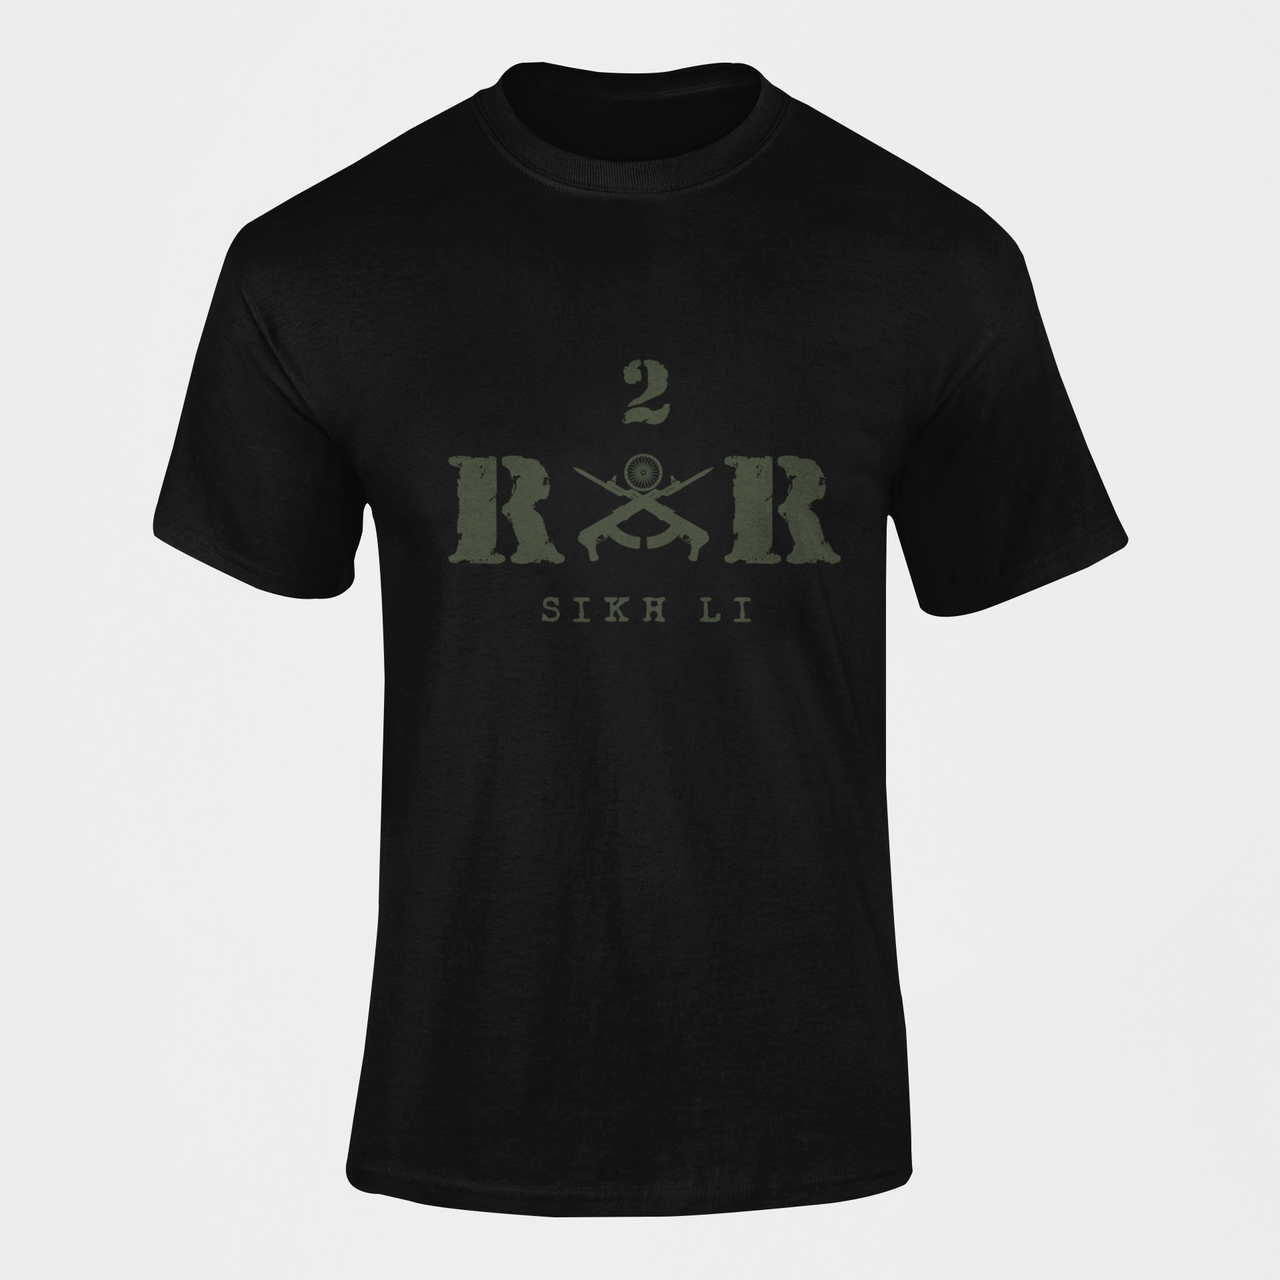 Rashtriya Rifles T-shirt - 2 RR Sikh Li (Men)